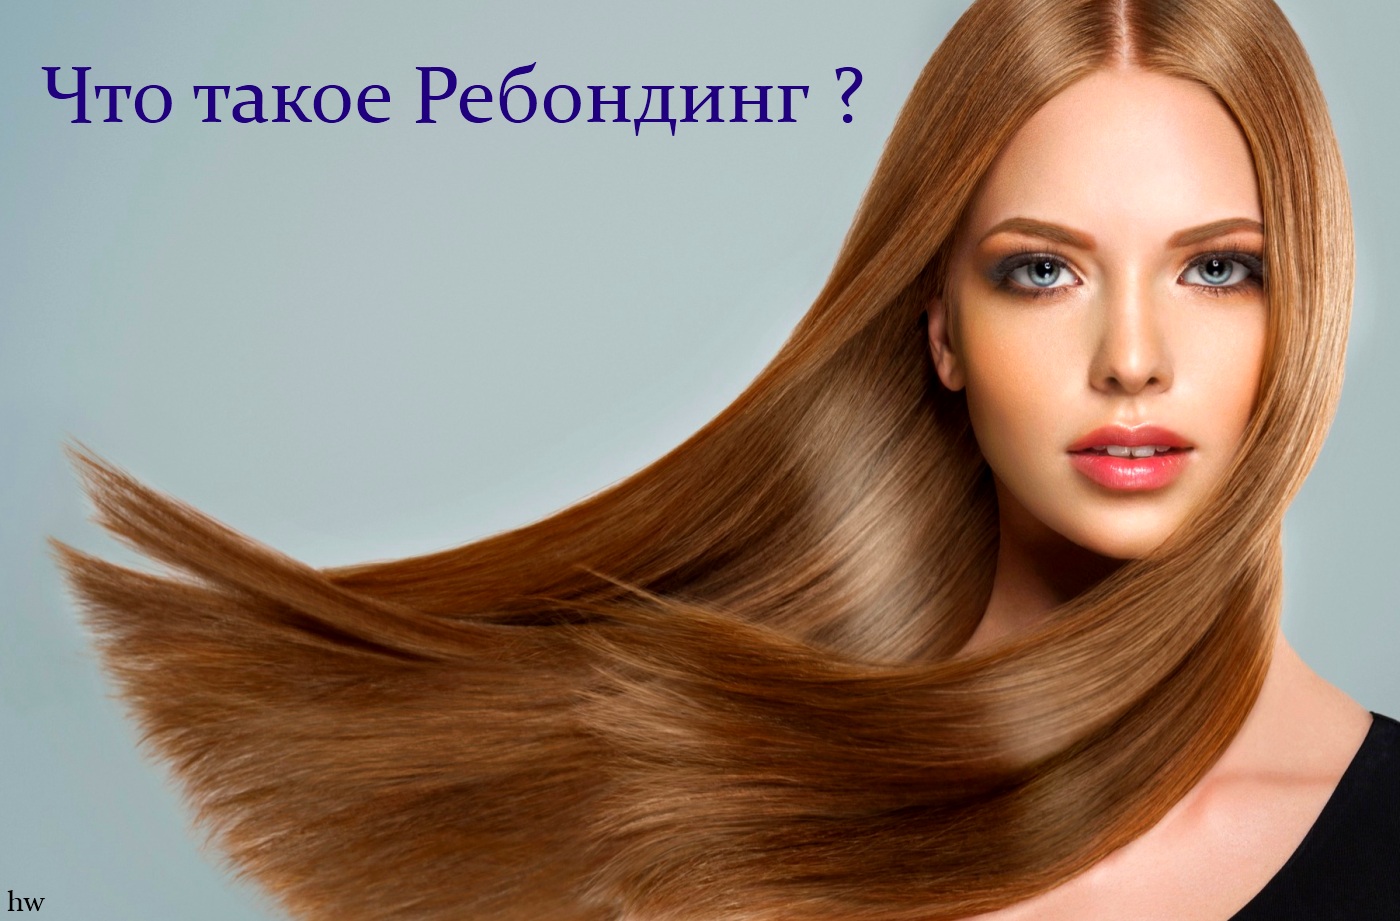 ребондинг - процедура восстановления волос - рис